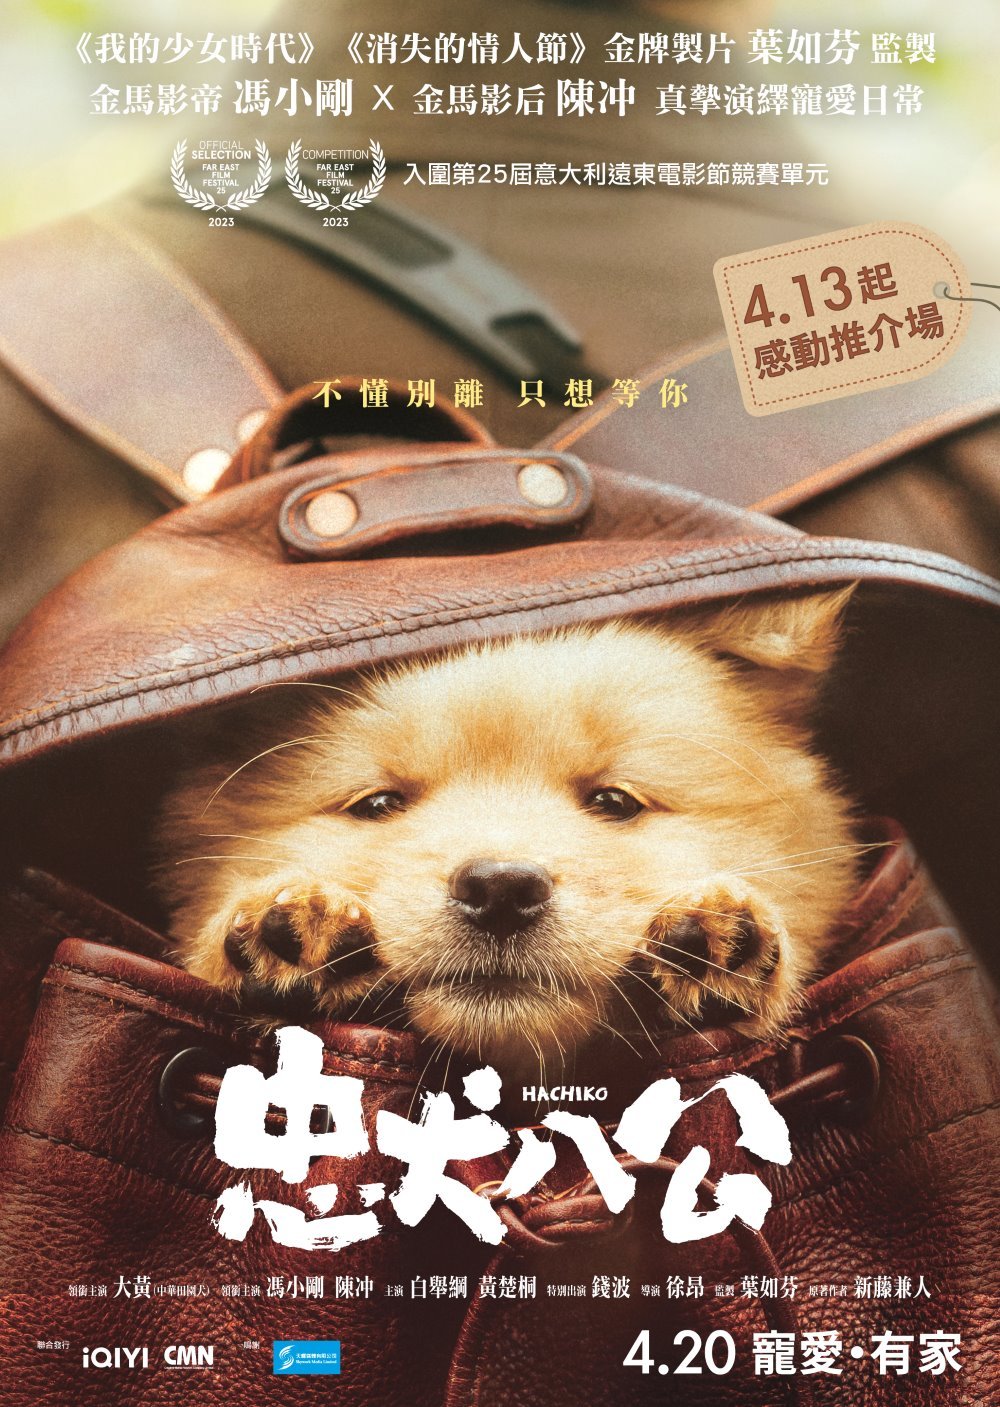 忠犬八公電影圖片 - HACHIKO_1sheet_preview_1680958076.jpg